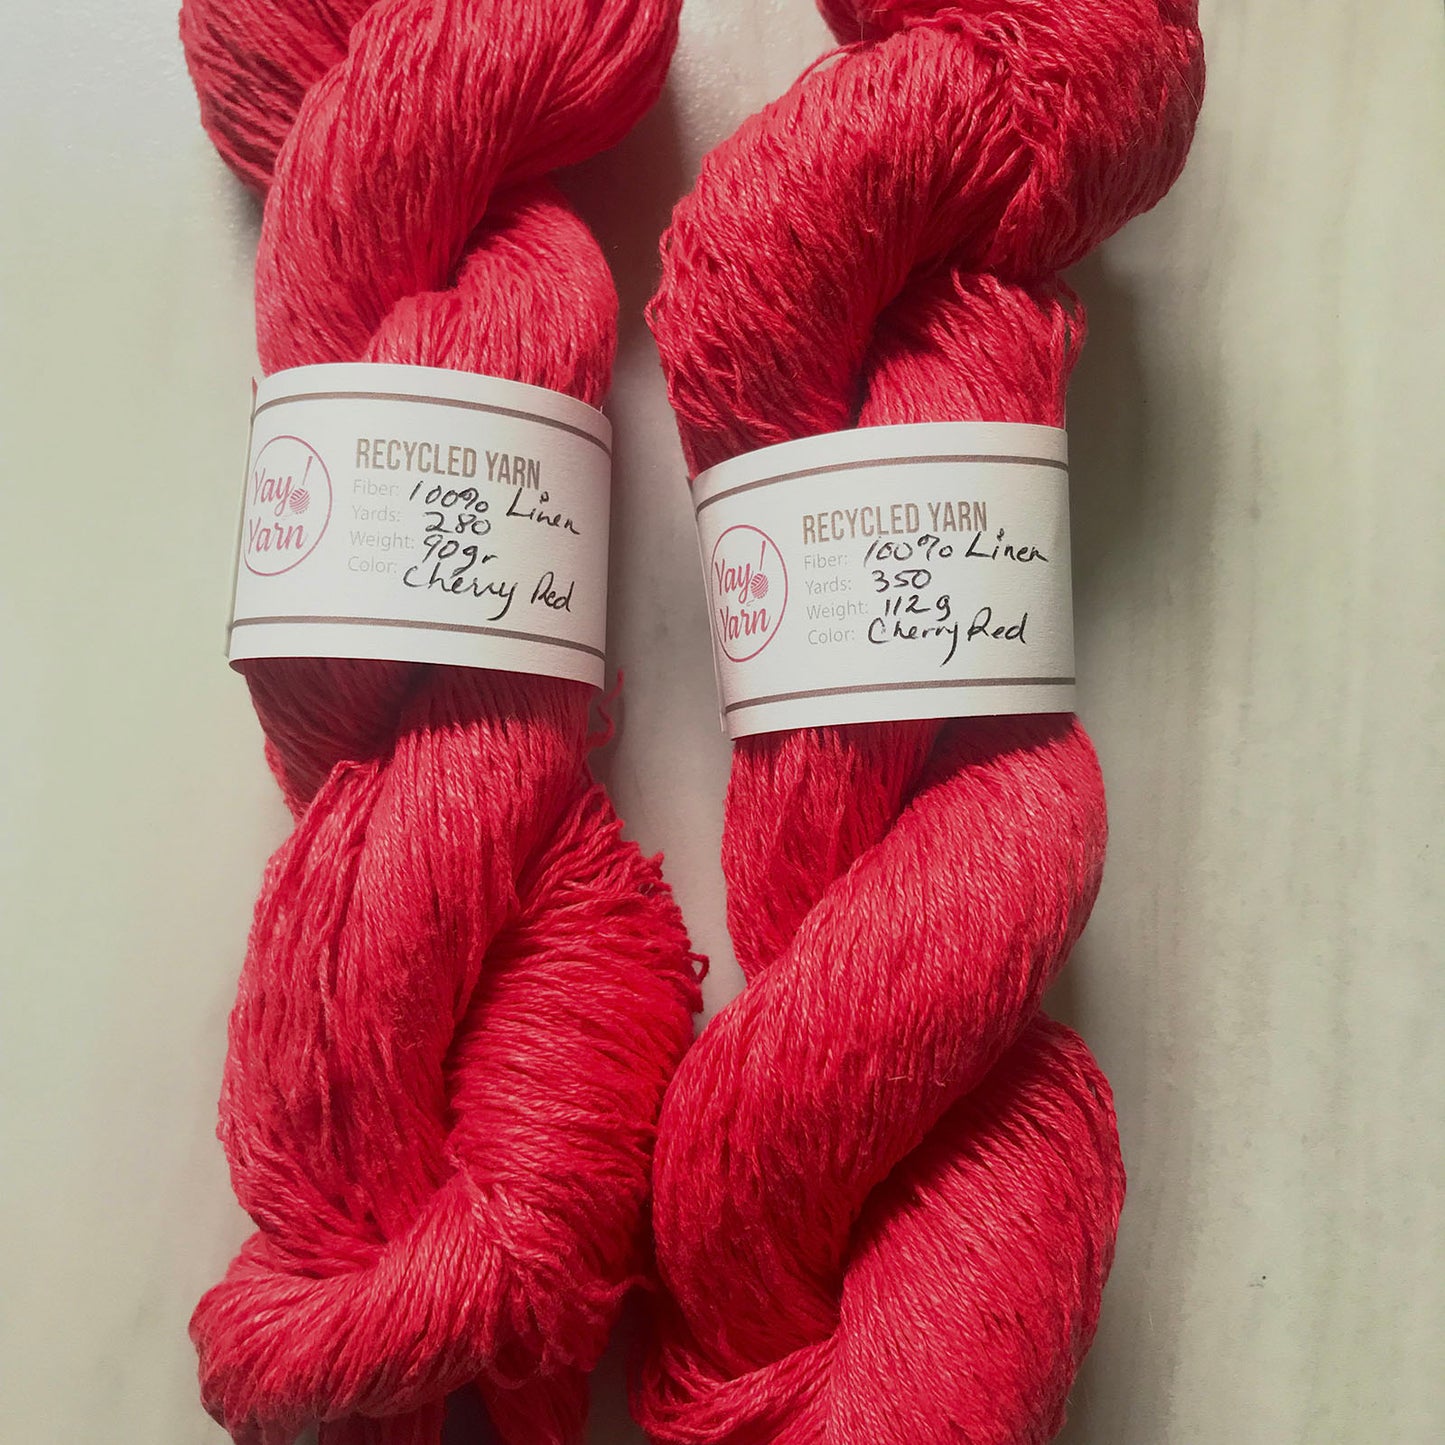 RECYCLED 100% Linen Yarn - Maraschino Cherry Red